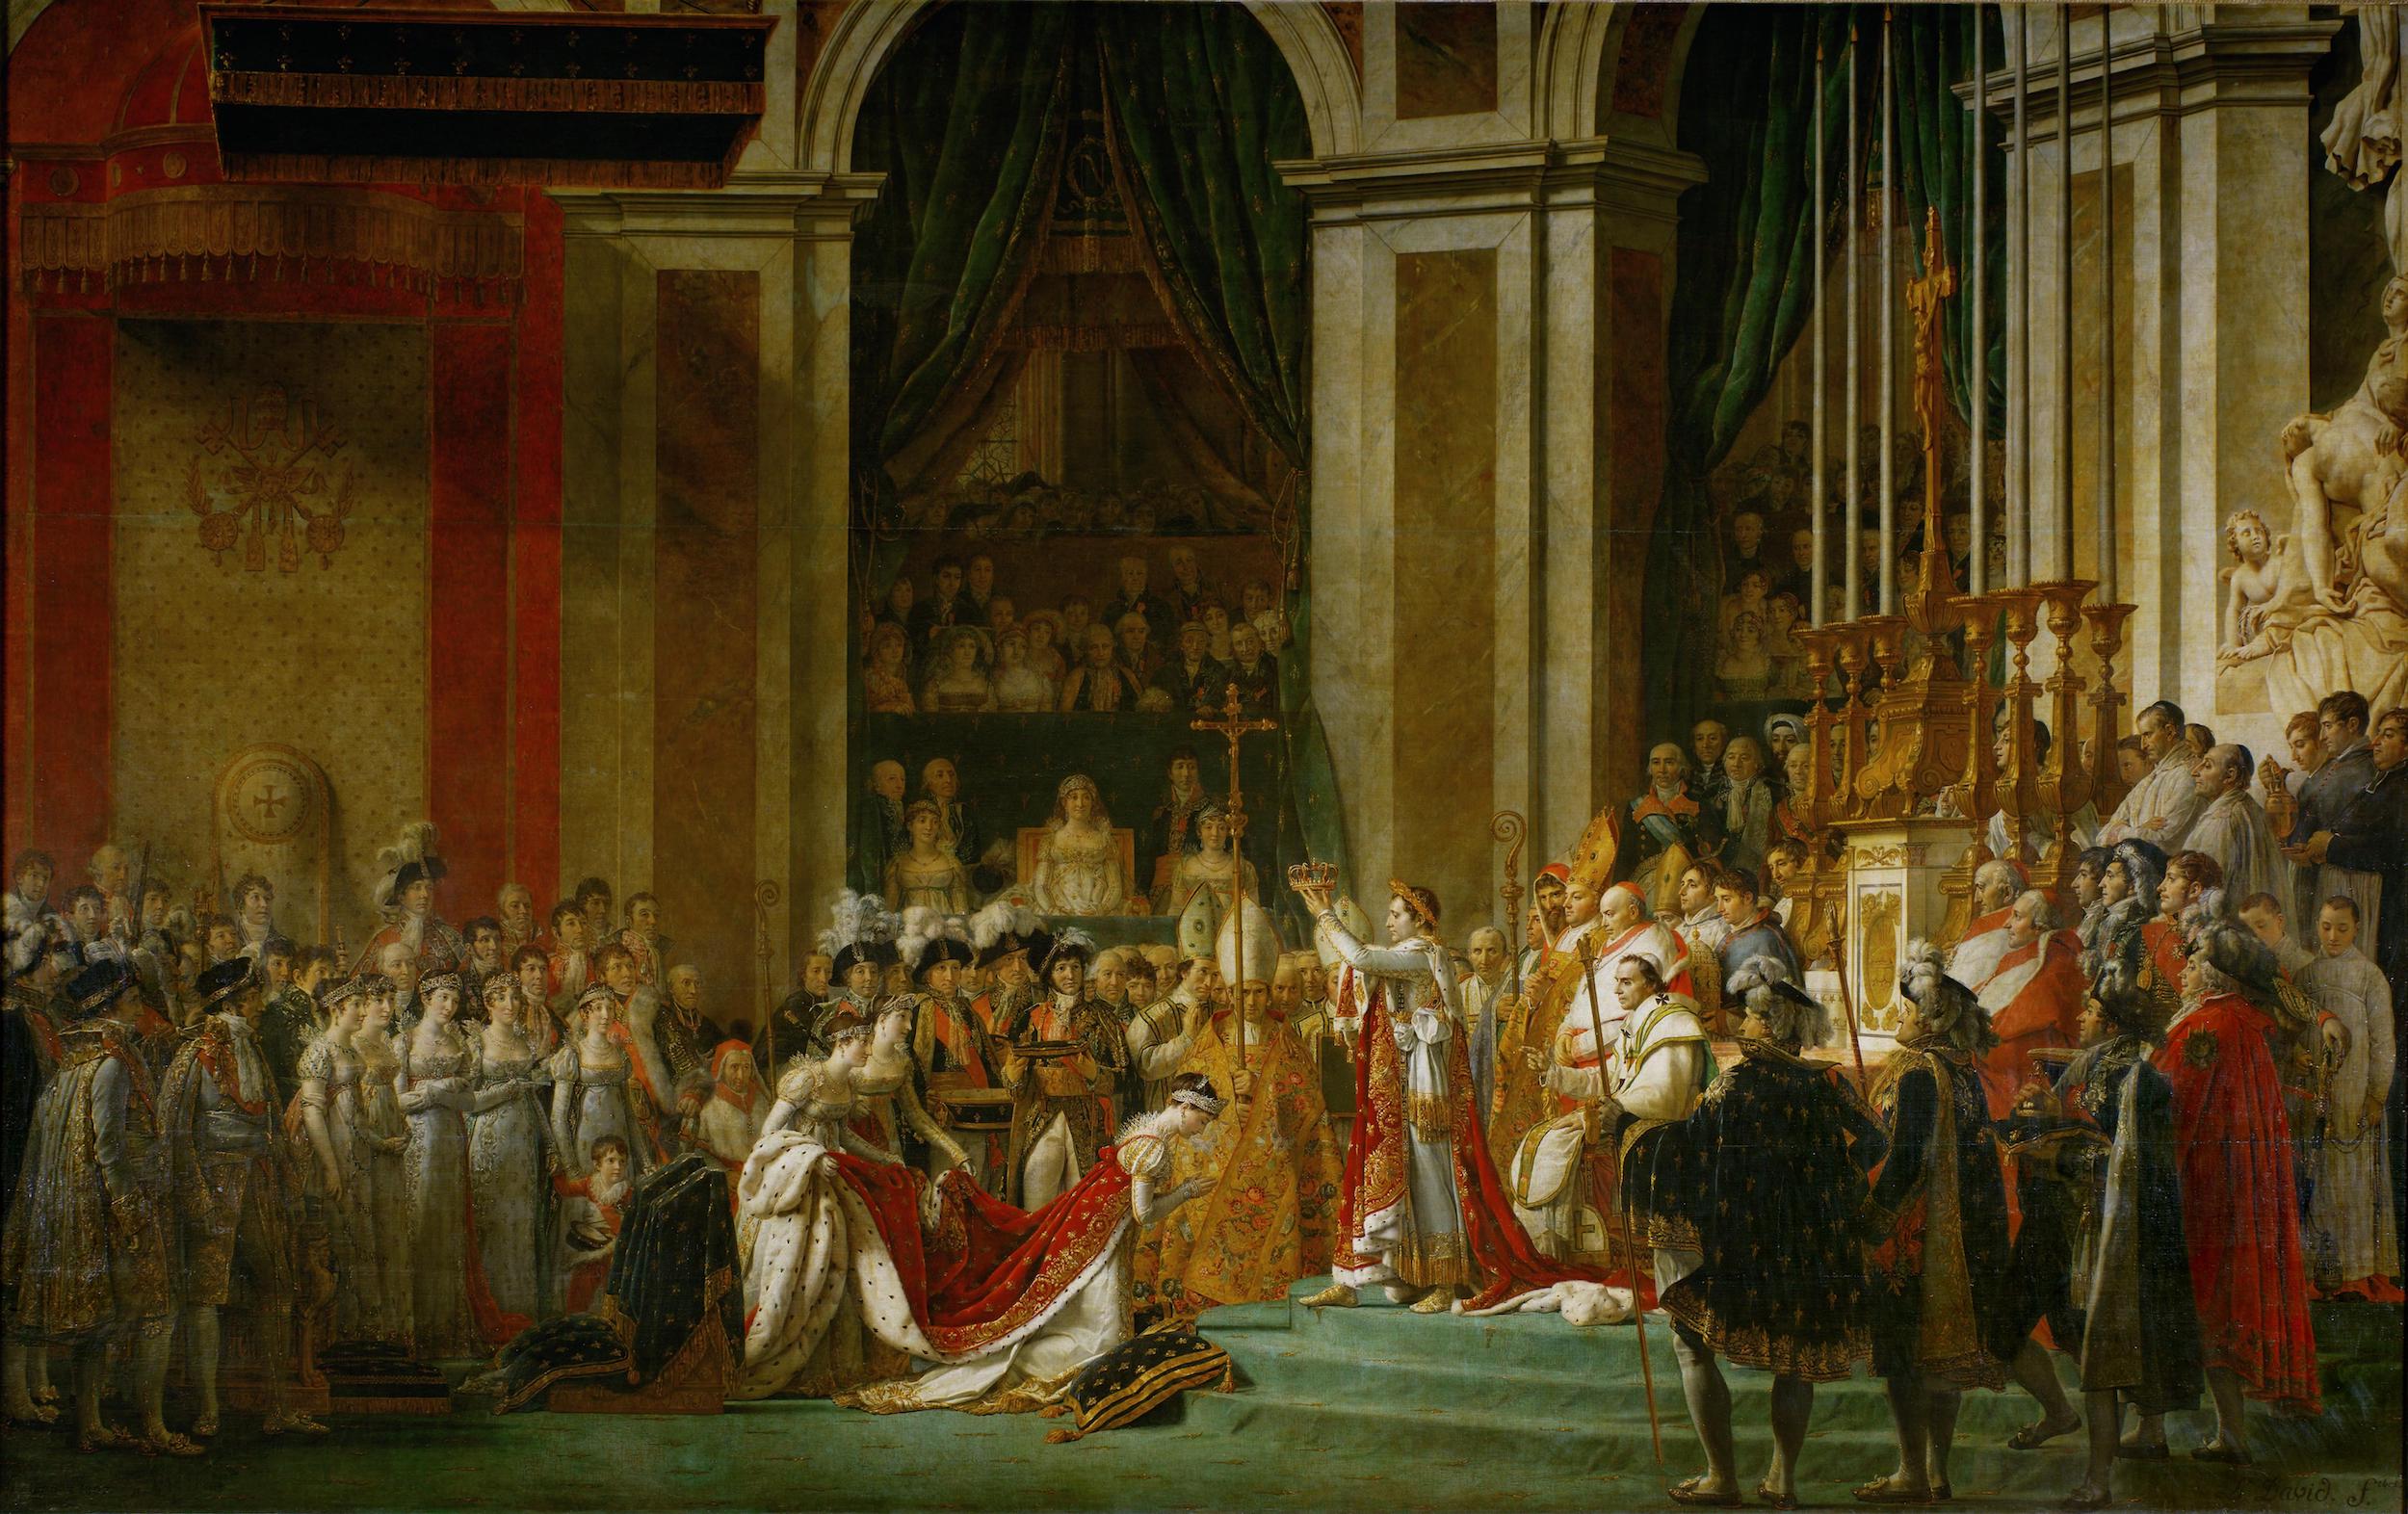 La coronación del emperador Napoleón I y la coronación de la emperatriz Josefina by Jacques-Louis David - 1806-1807 - 6,21 x 9.79 m Musée du Louvre